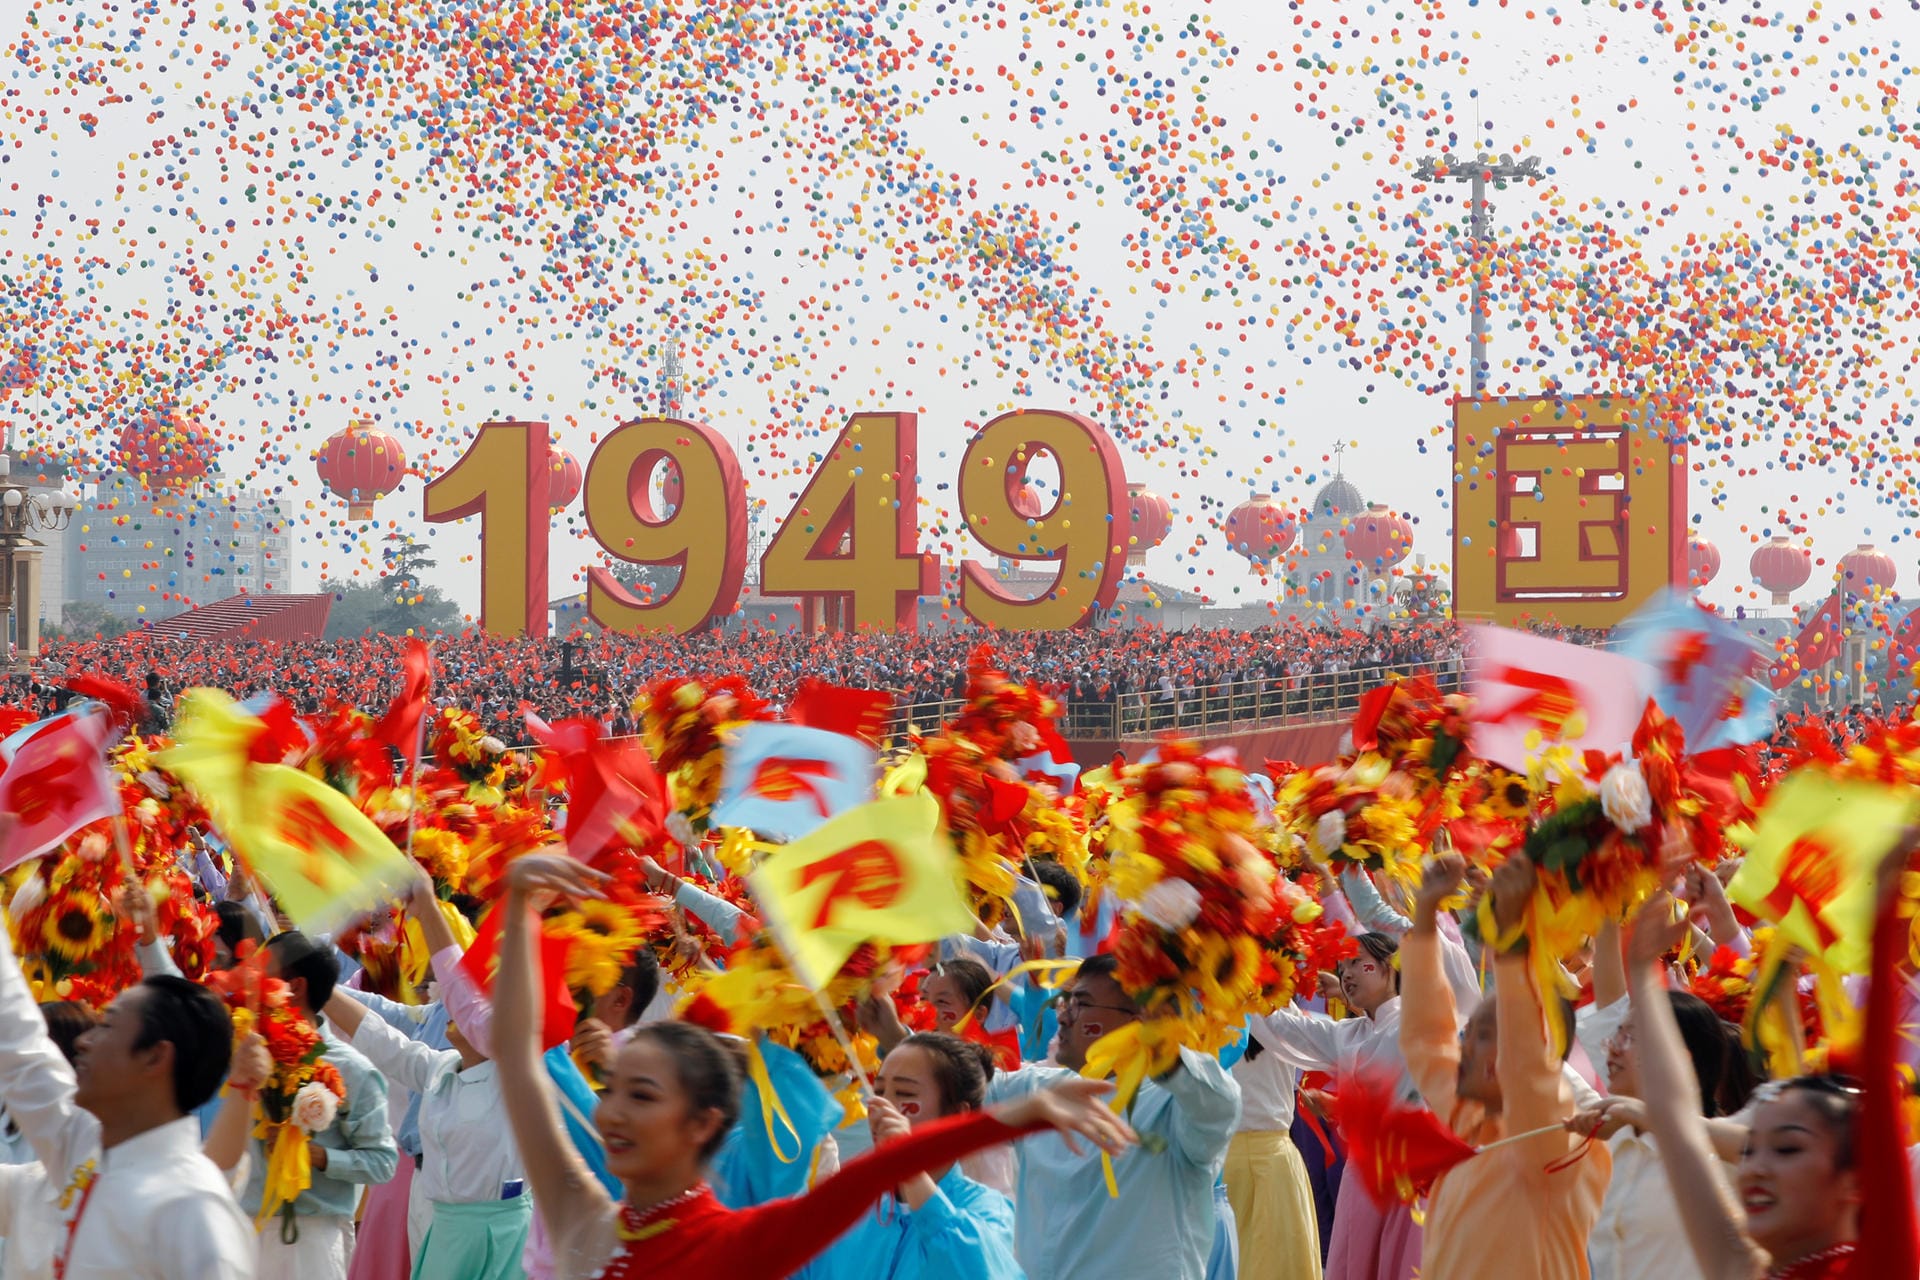 Die Volksrepublik China hat mit der größten Waffenschau ihrer Geschichte ihren 70. Gründungstag gefeiert.